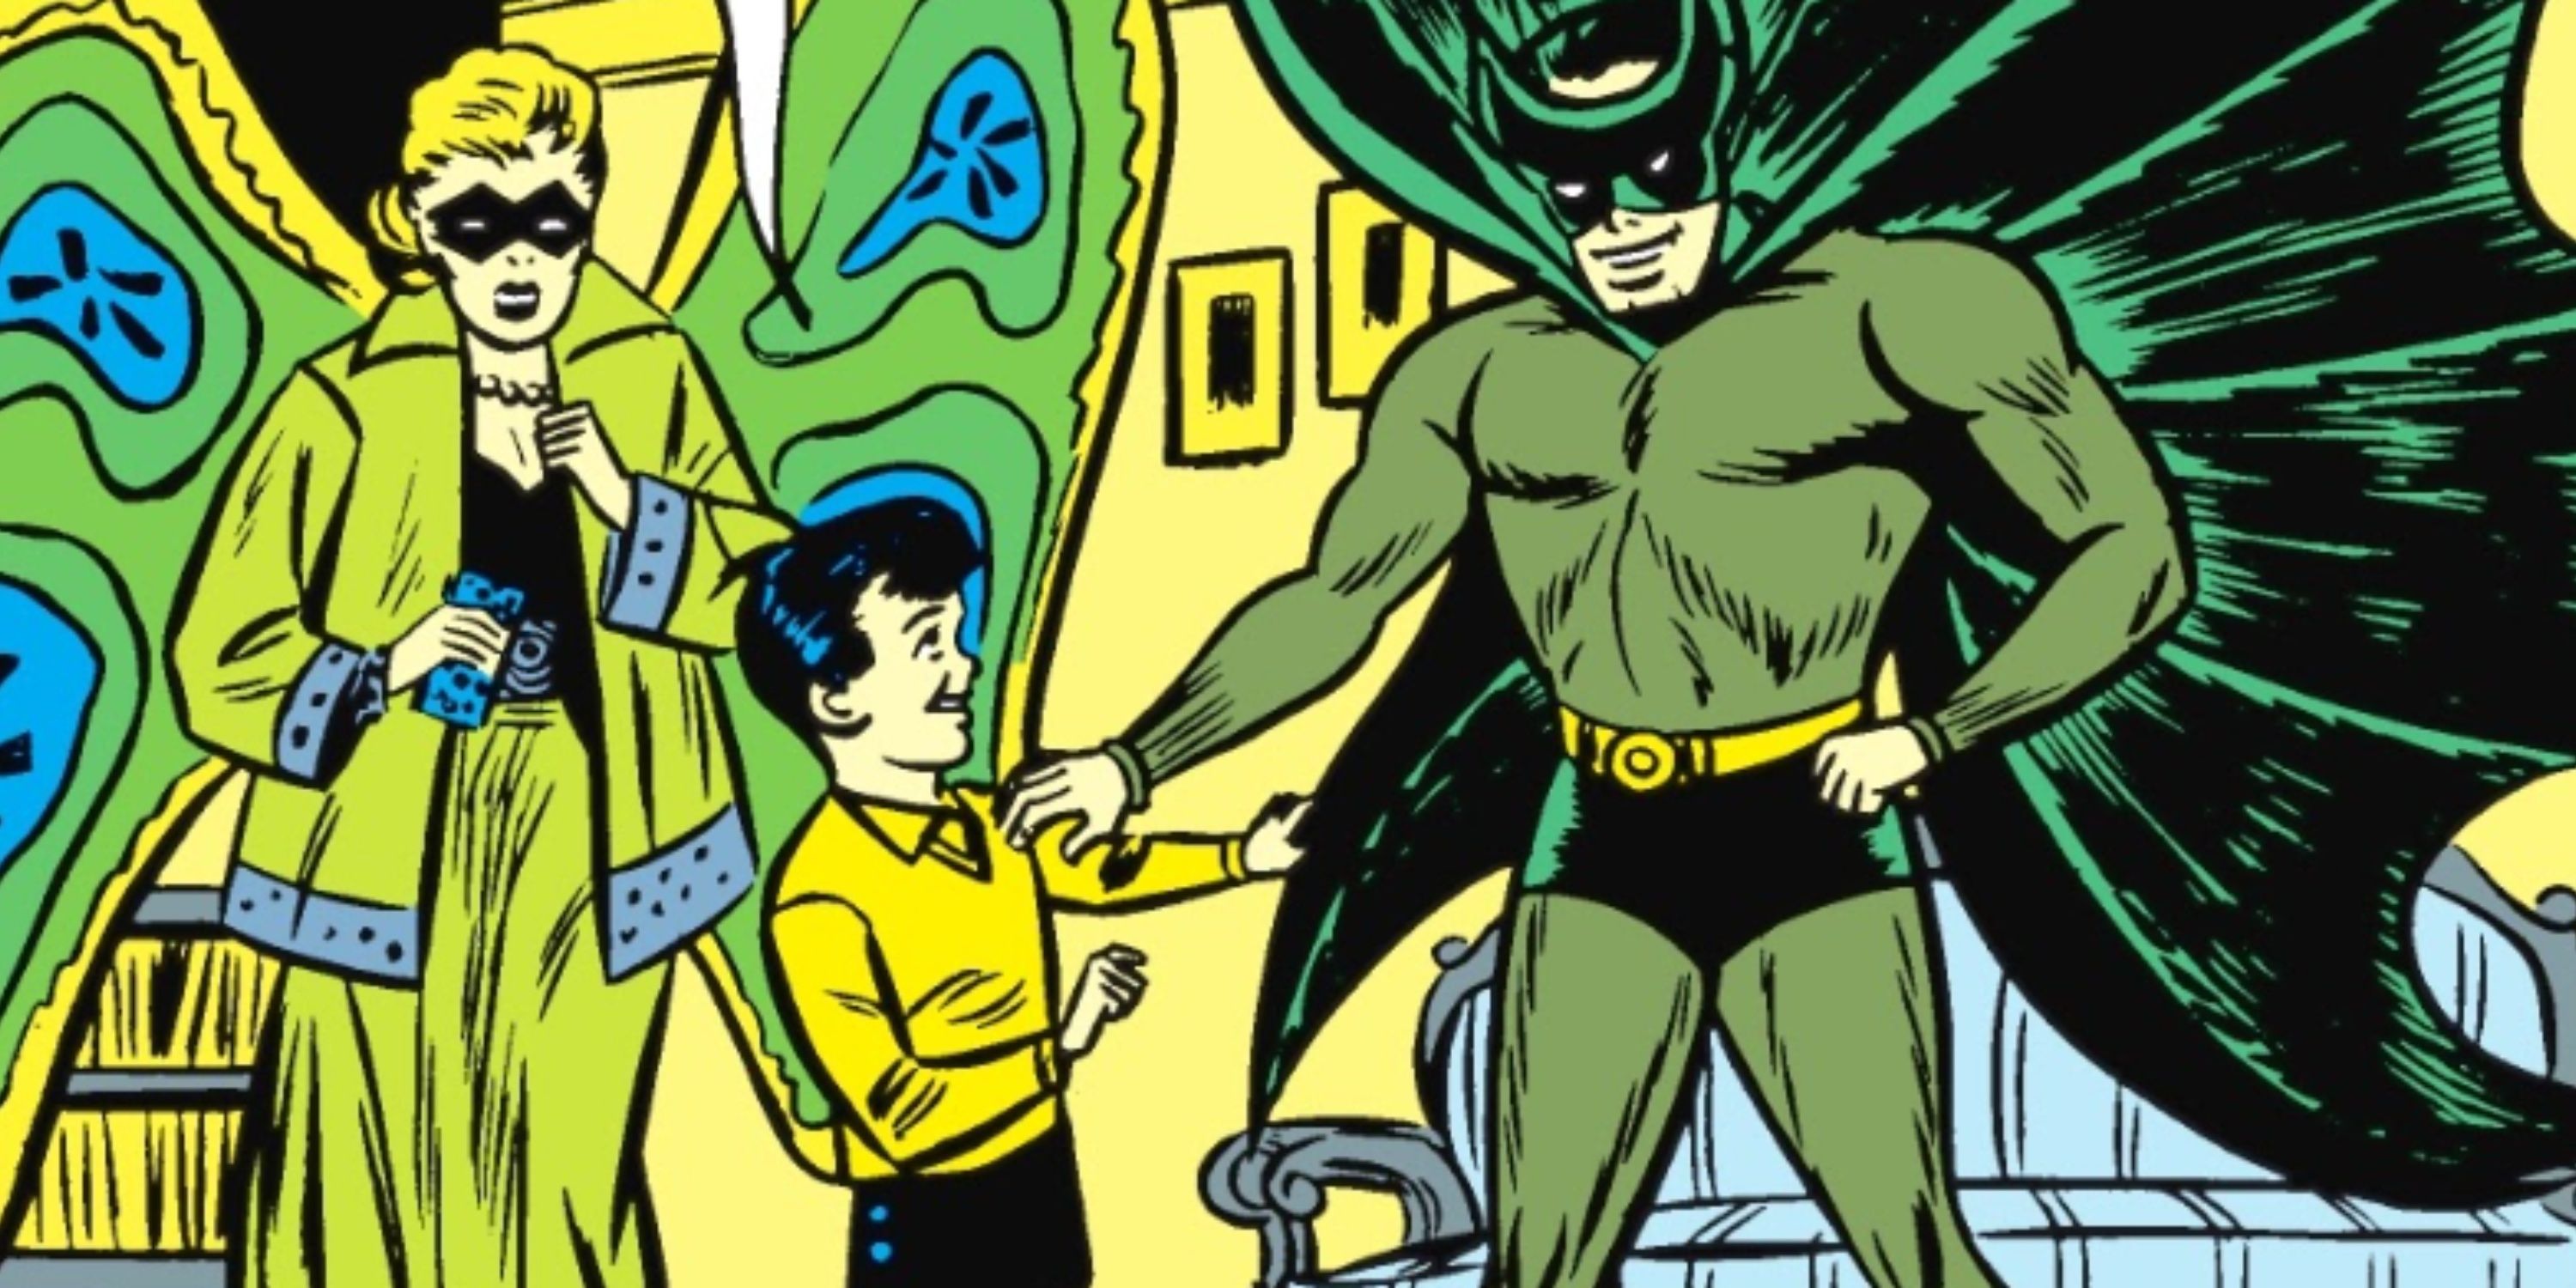 Thomas Wayne vestido de Batman enquanto conversa com o jovem Bruce Wayne